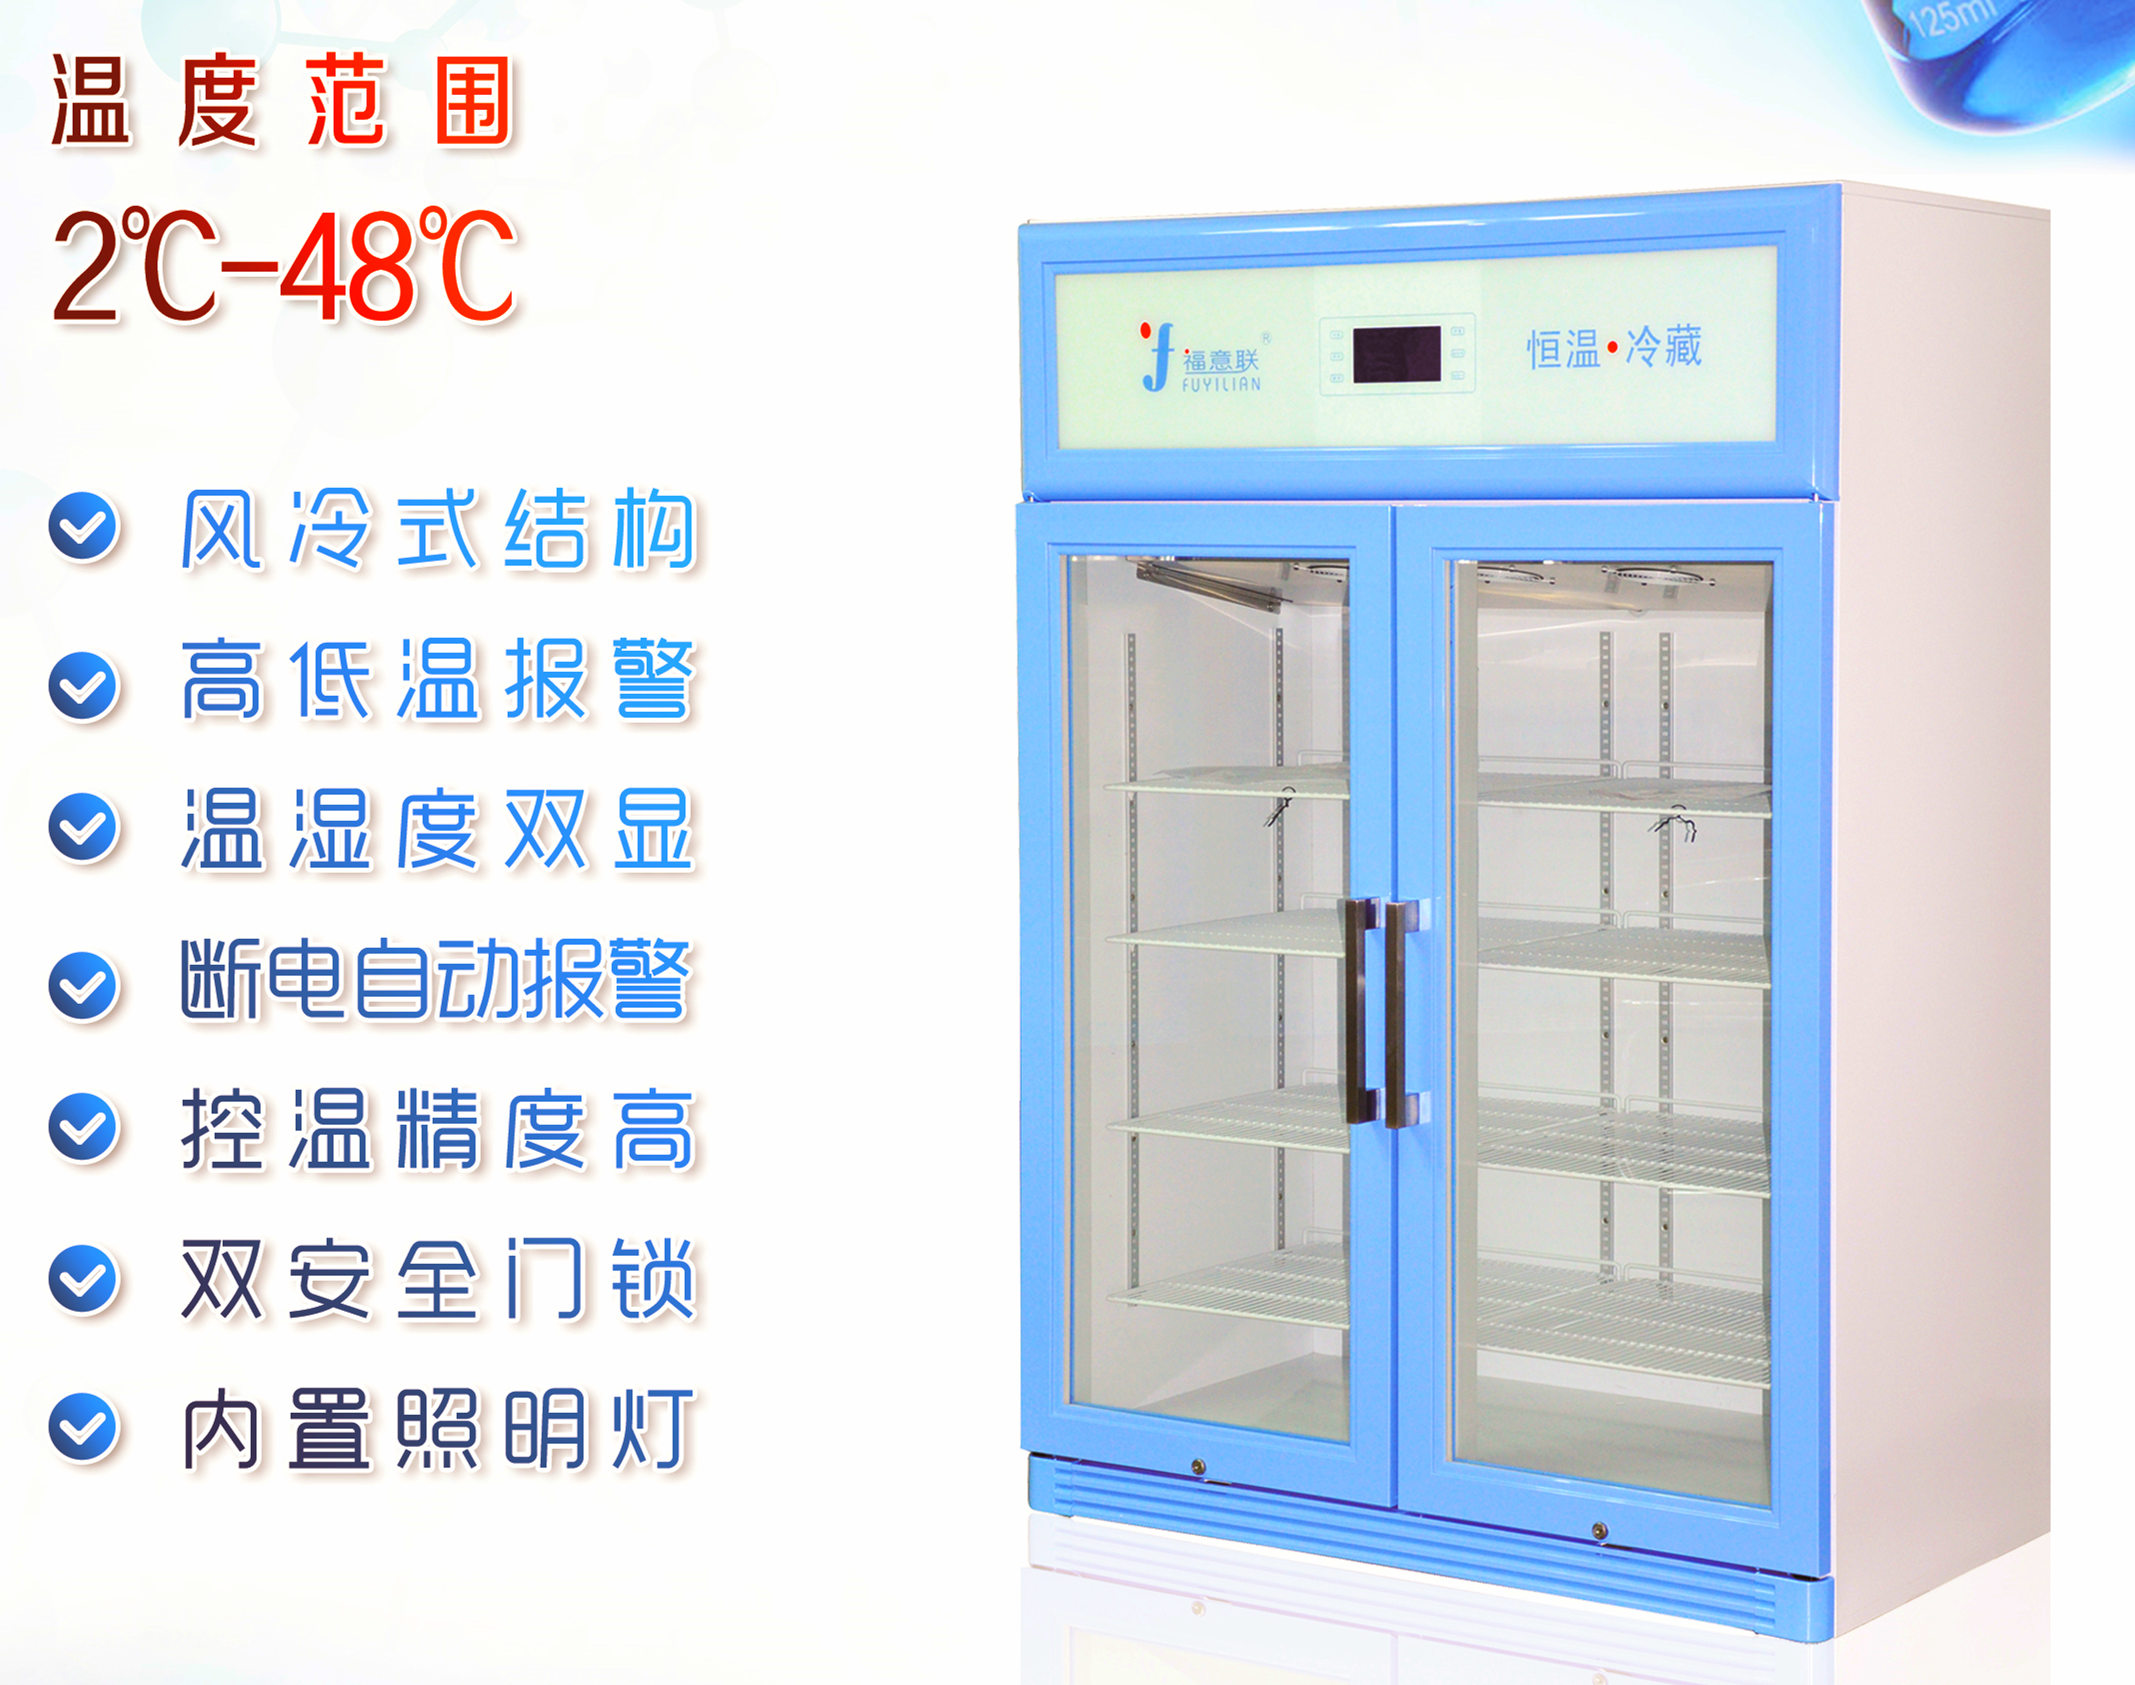 2-8度冷藏柜介绍-冷藏冰箱